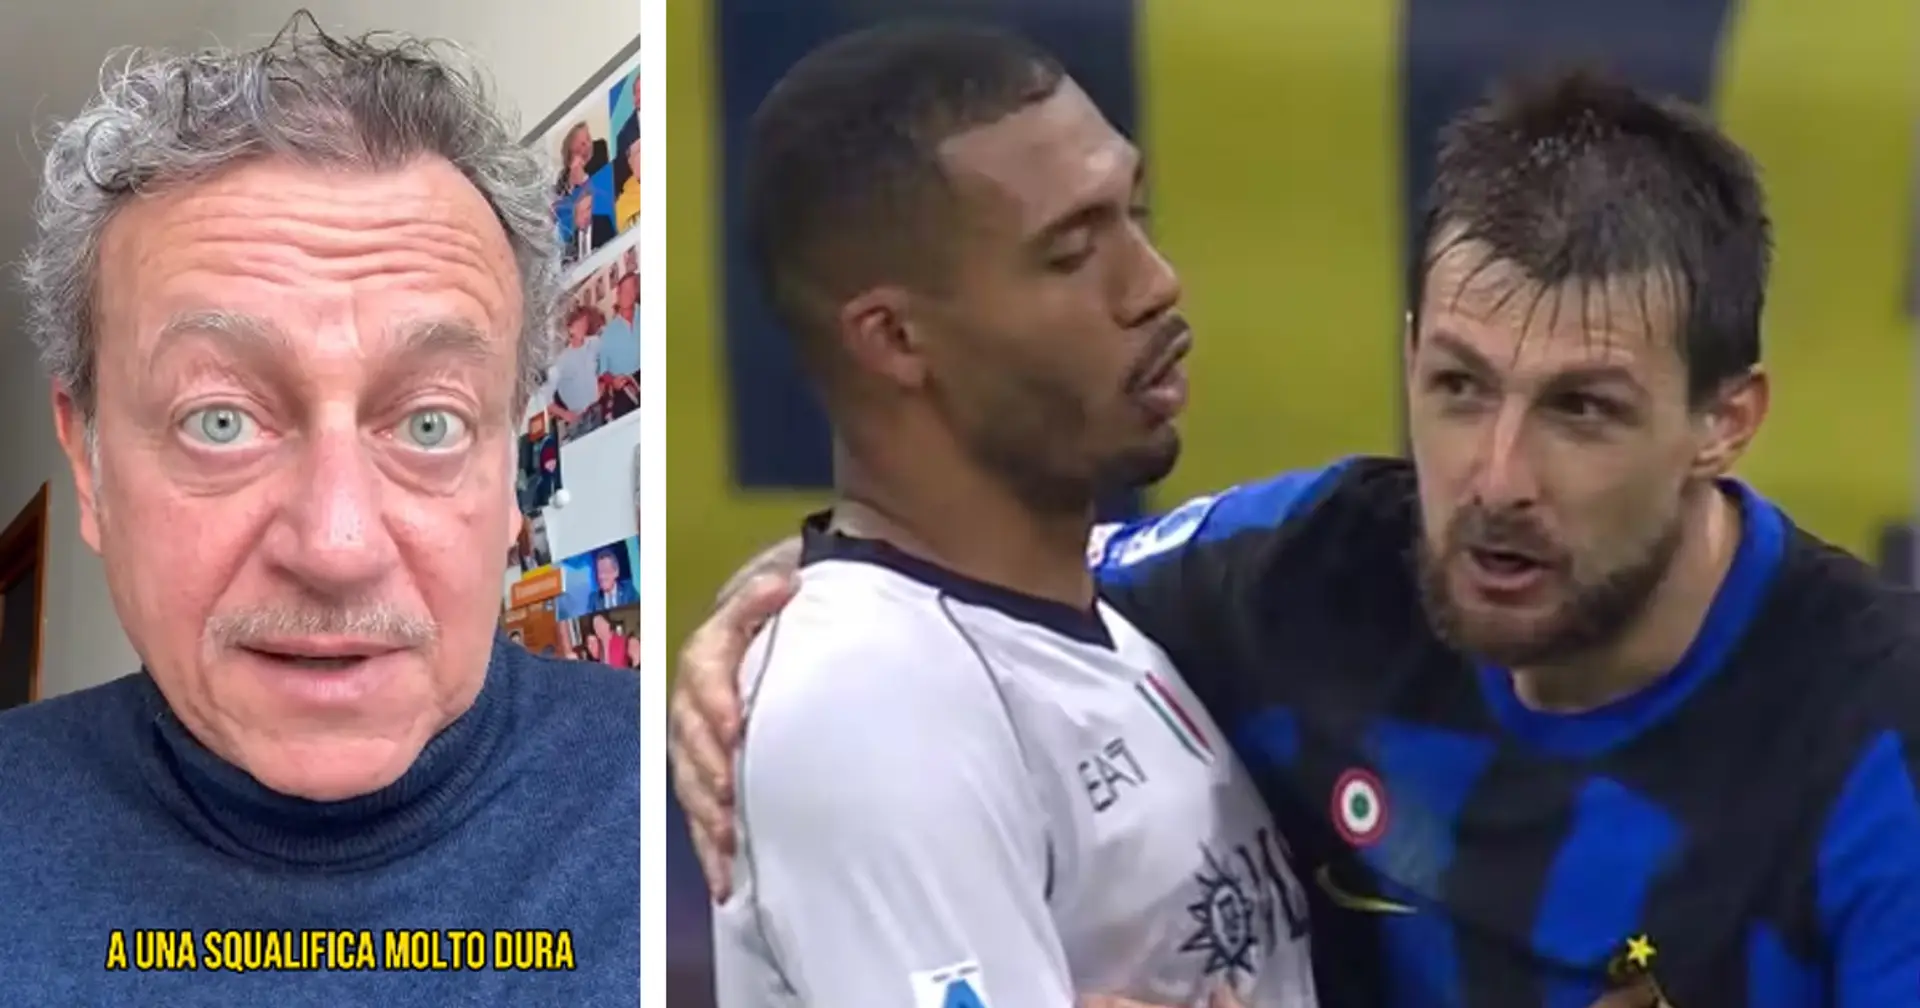 "Va verso una squalifica molto dura": Sabatini ha già condannato Acerbi, e critica Inter e FIGC